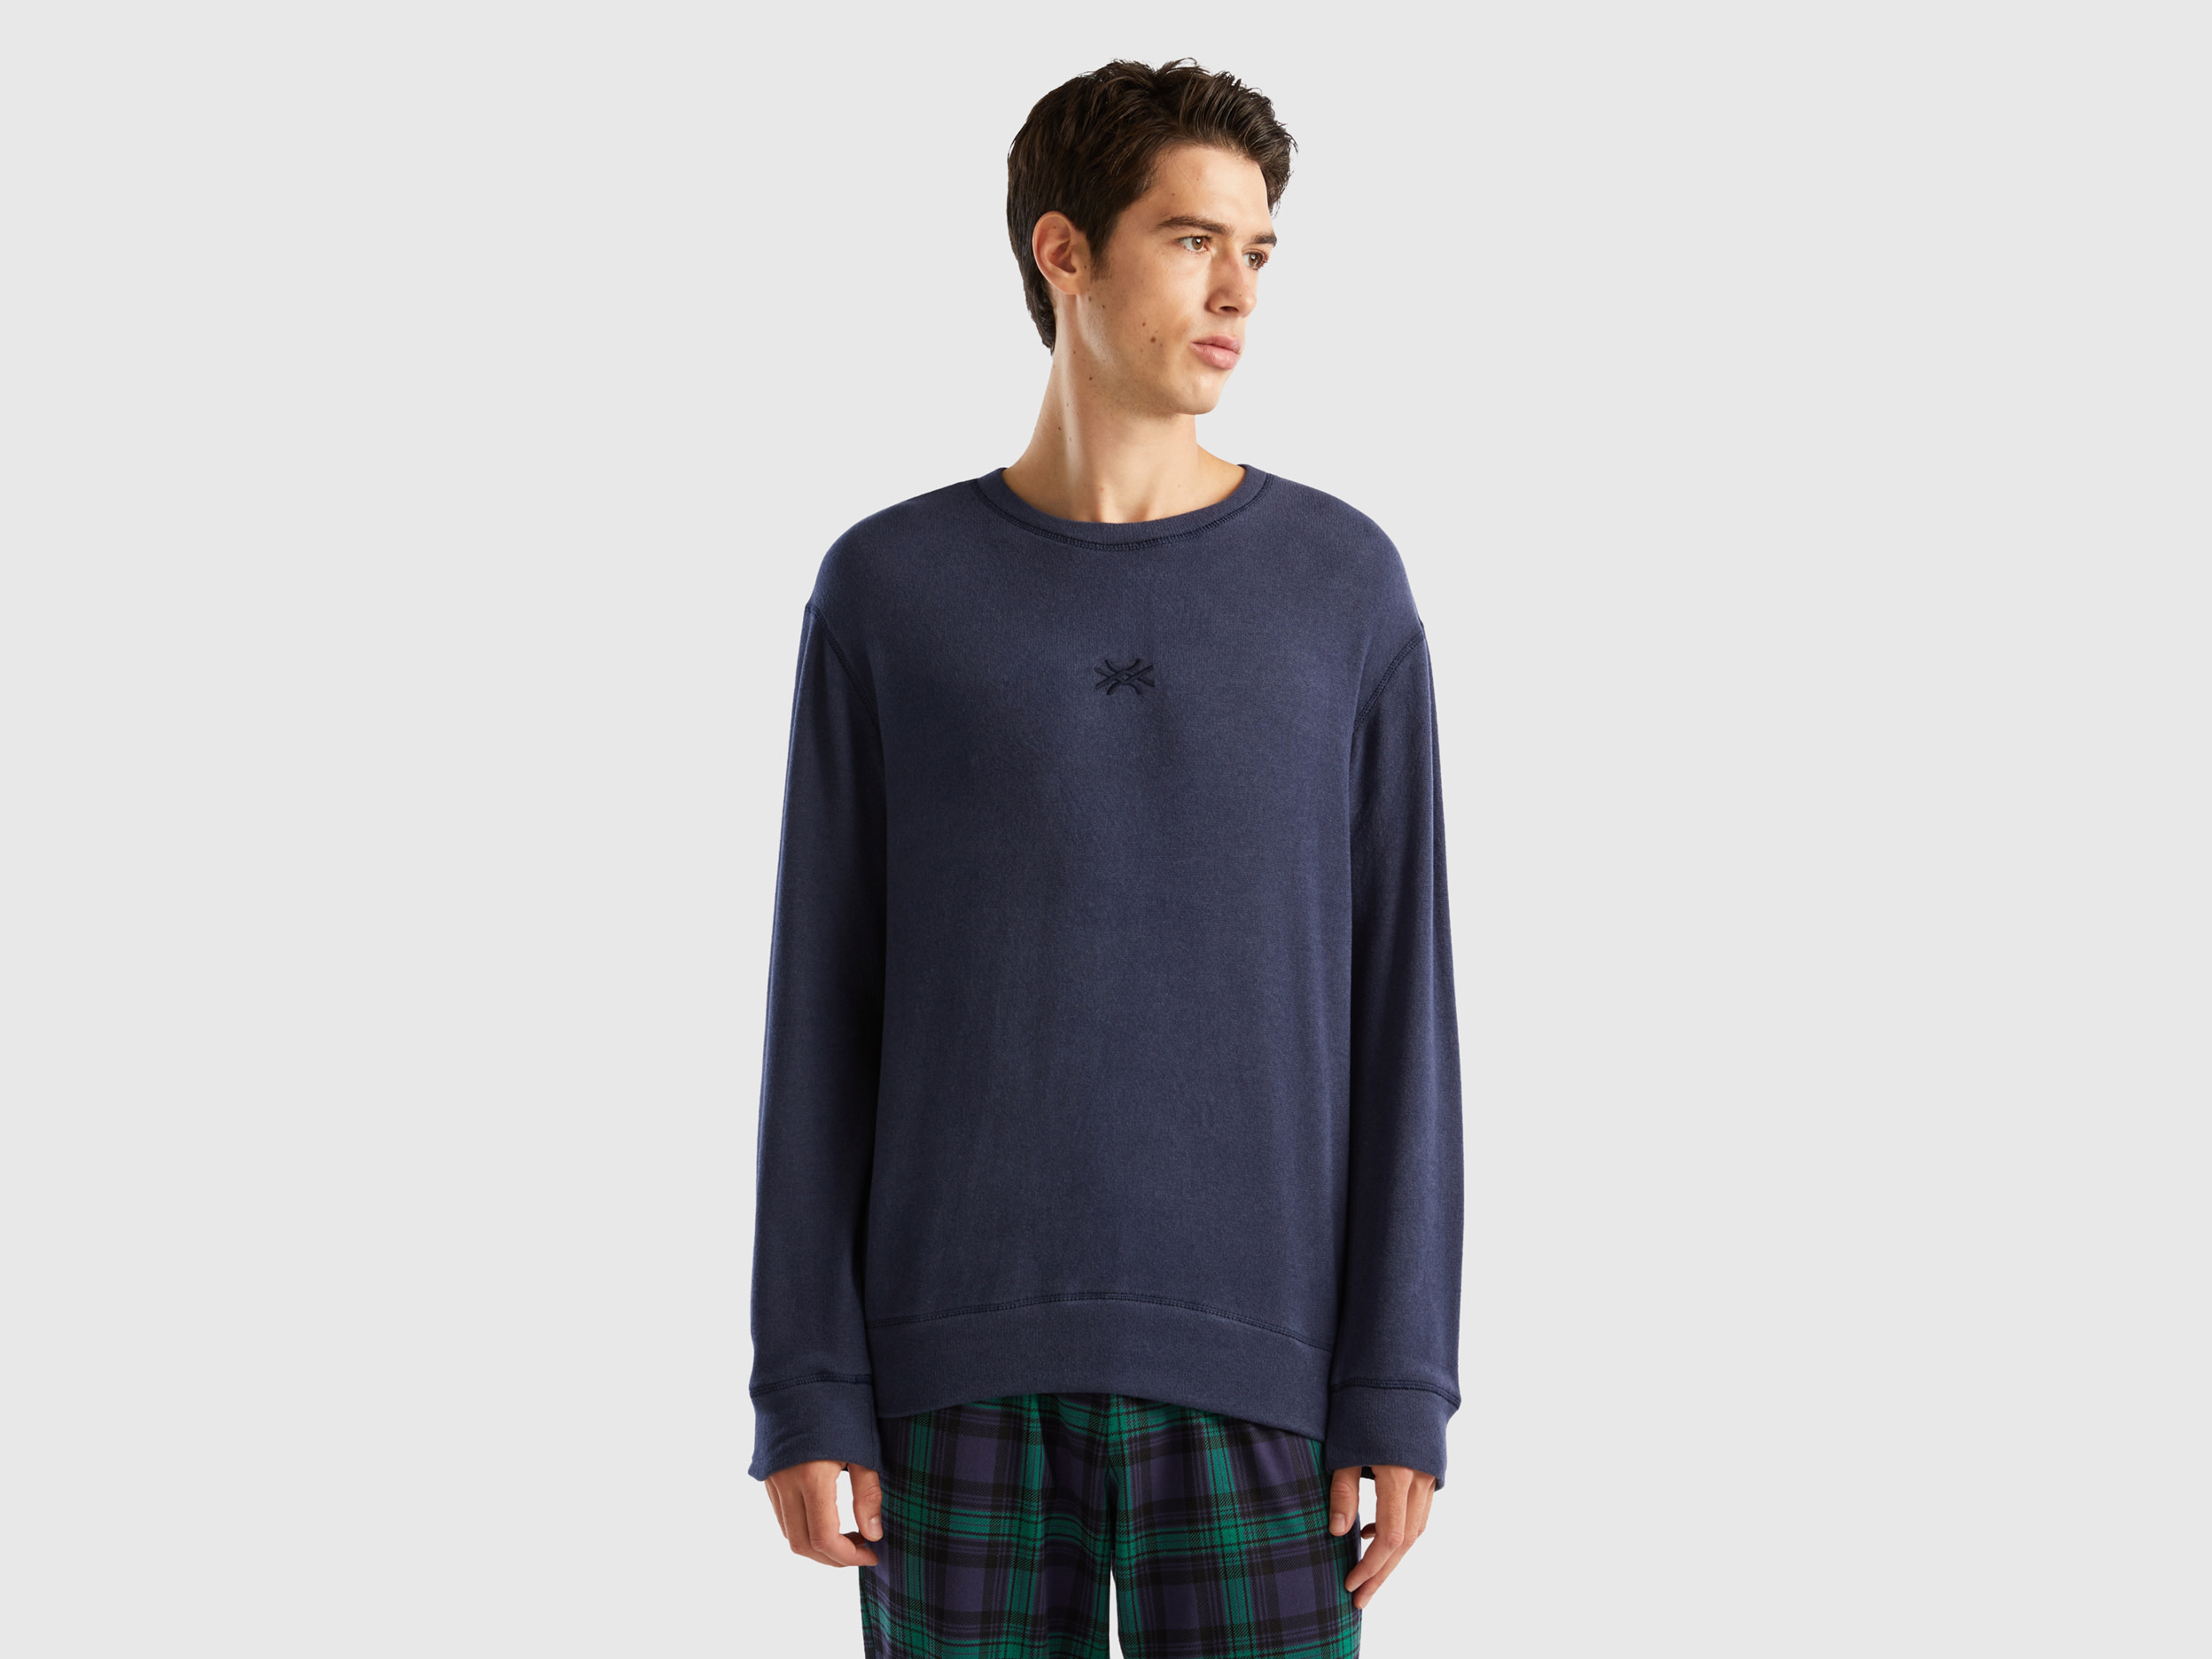 Benetton, Warm Stretch Cotton Blend Sweater, size L, Dark Blue, Men